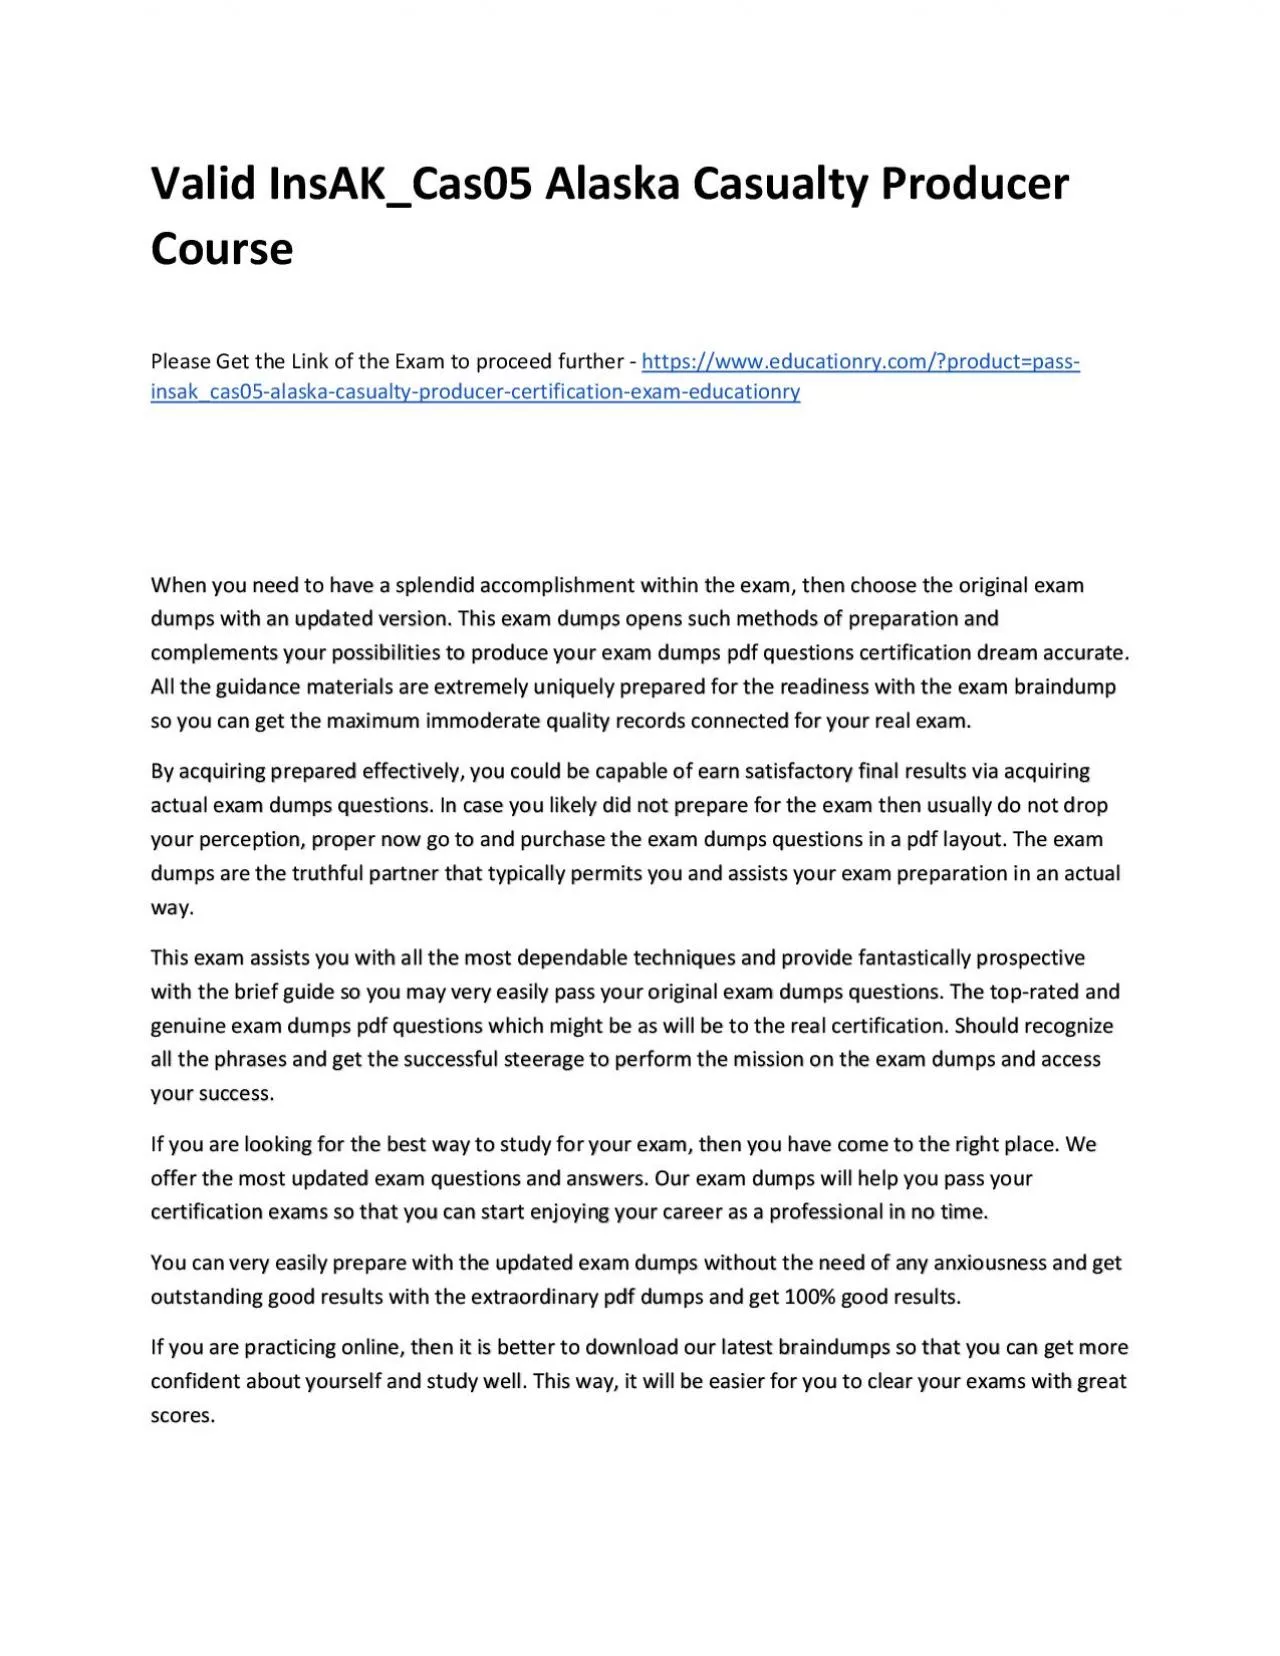 Valid InsAK_Cas05 Alaska Casualty Producer Practice Course